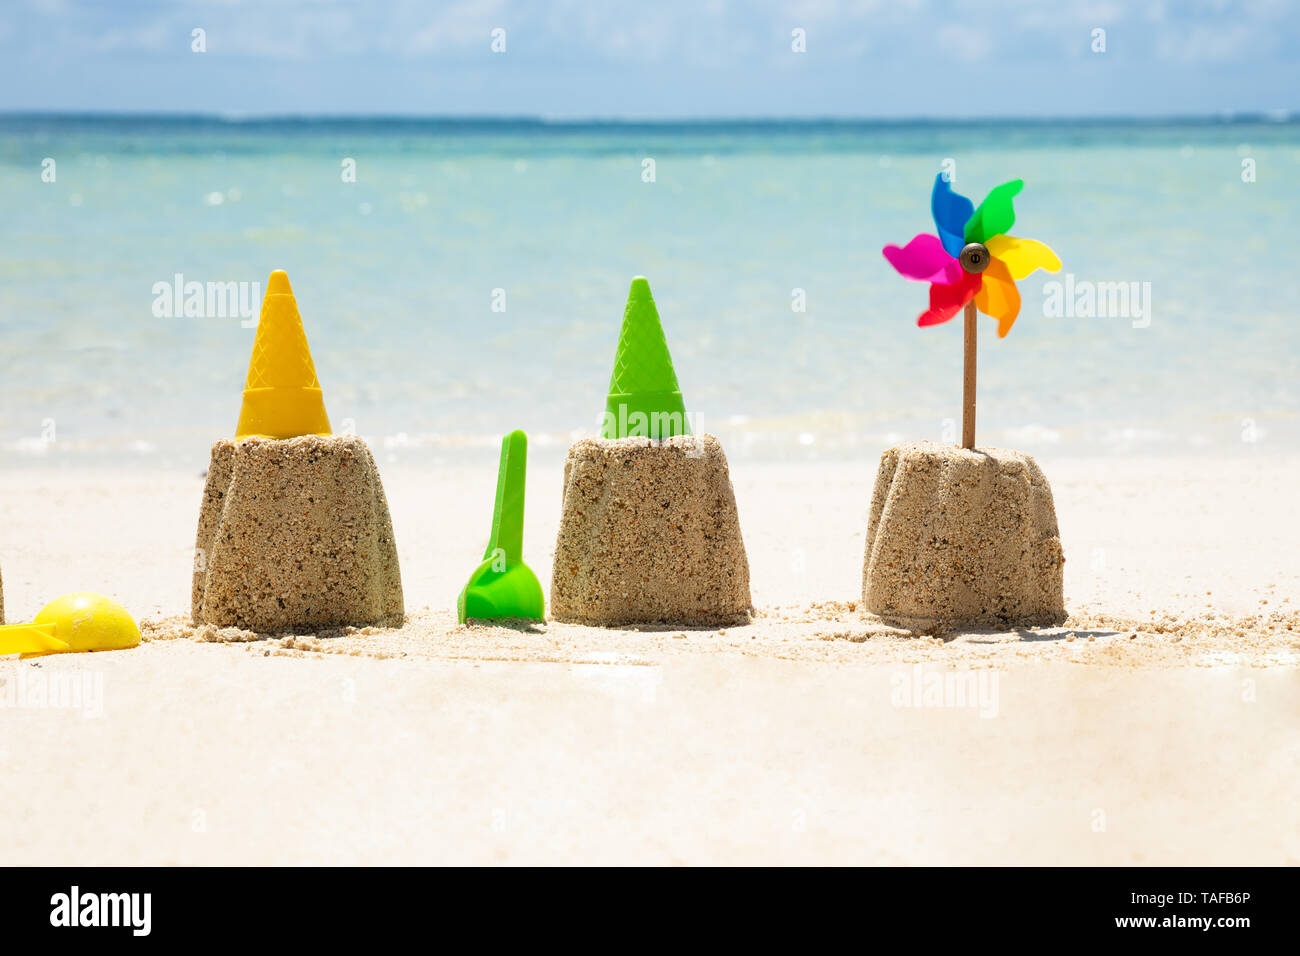 Spielzeug mit bunten Windrad Vor Meer auf Sand am Strand Stockfoto